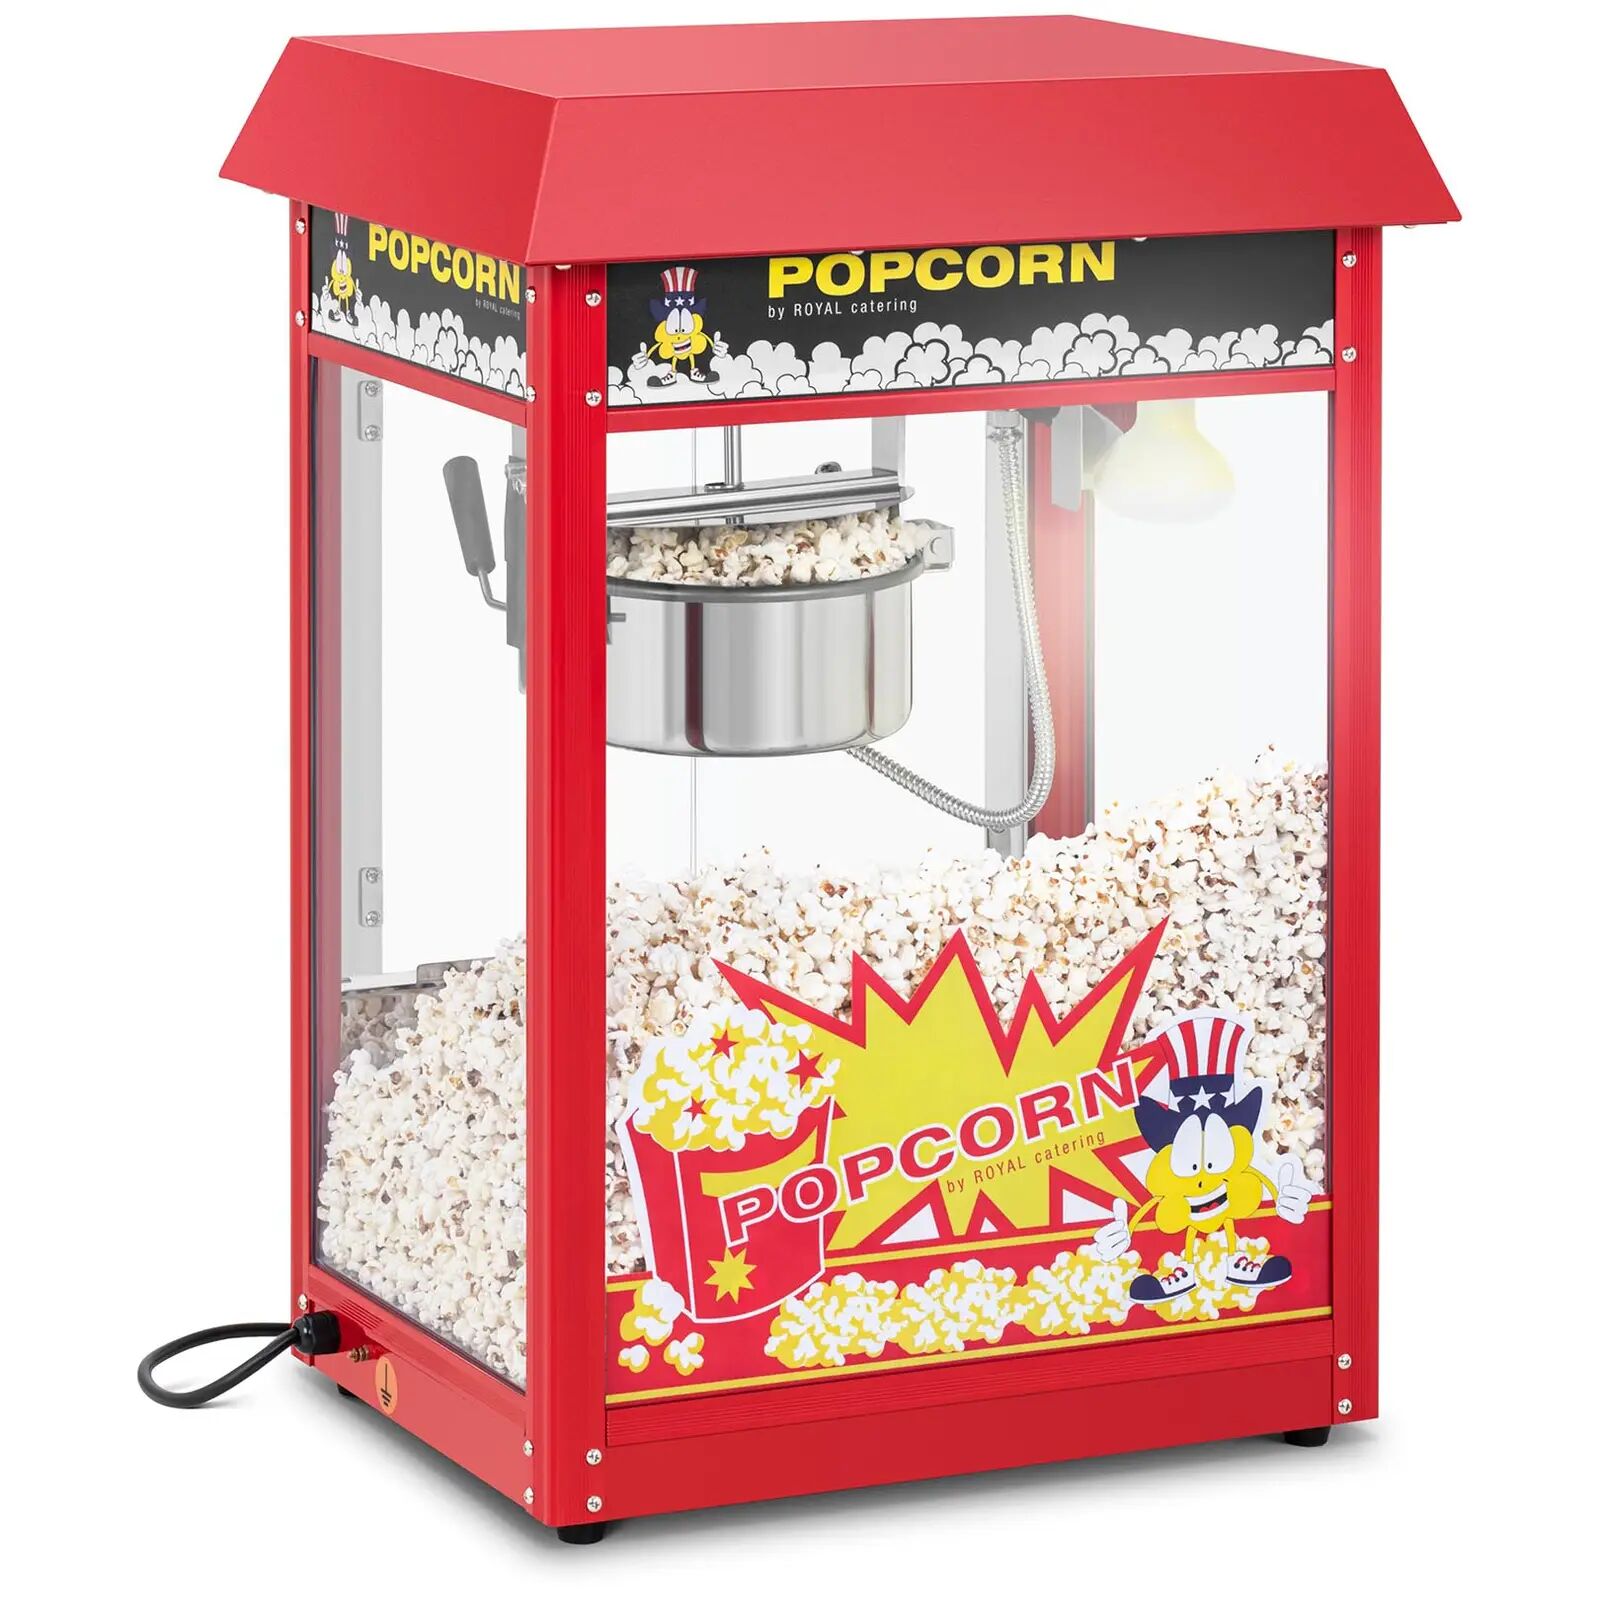 royal catering macchina per popcorn piccola - acciaio inossidabile rosso con vetro temperato e bollitore rivestito in teflon rcpr-16e